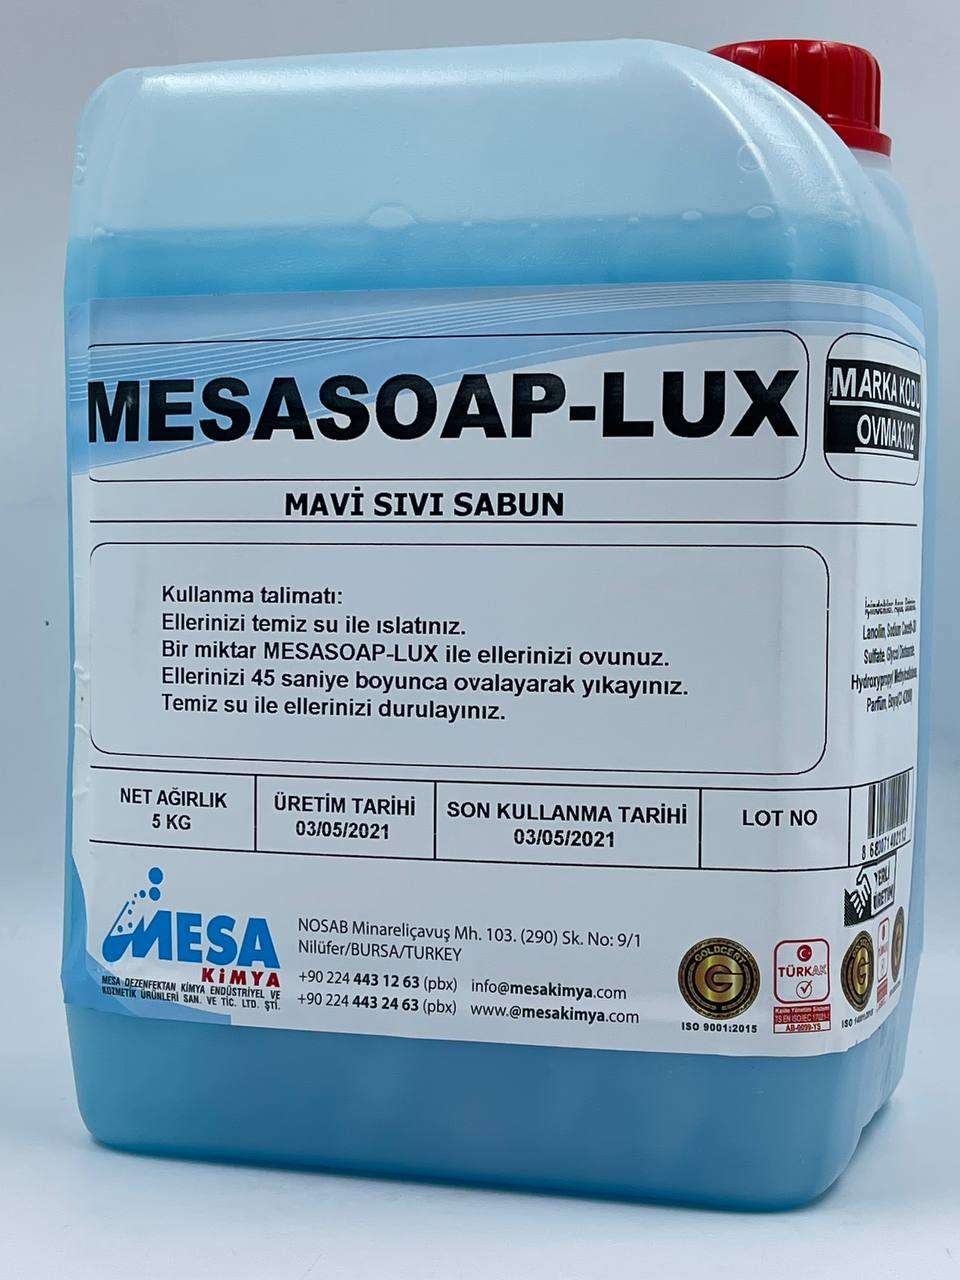 Sıvı sabun 5 lt Mesasoap-lux mavı